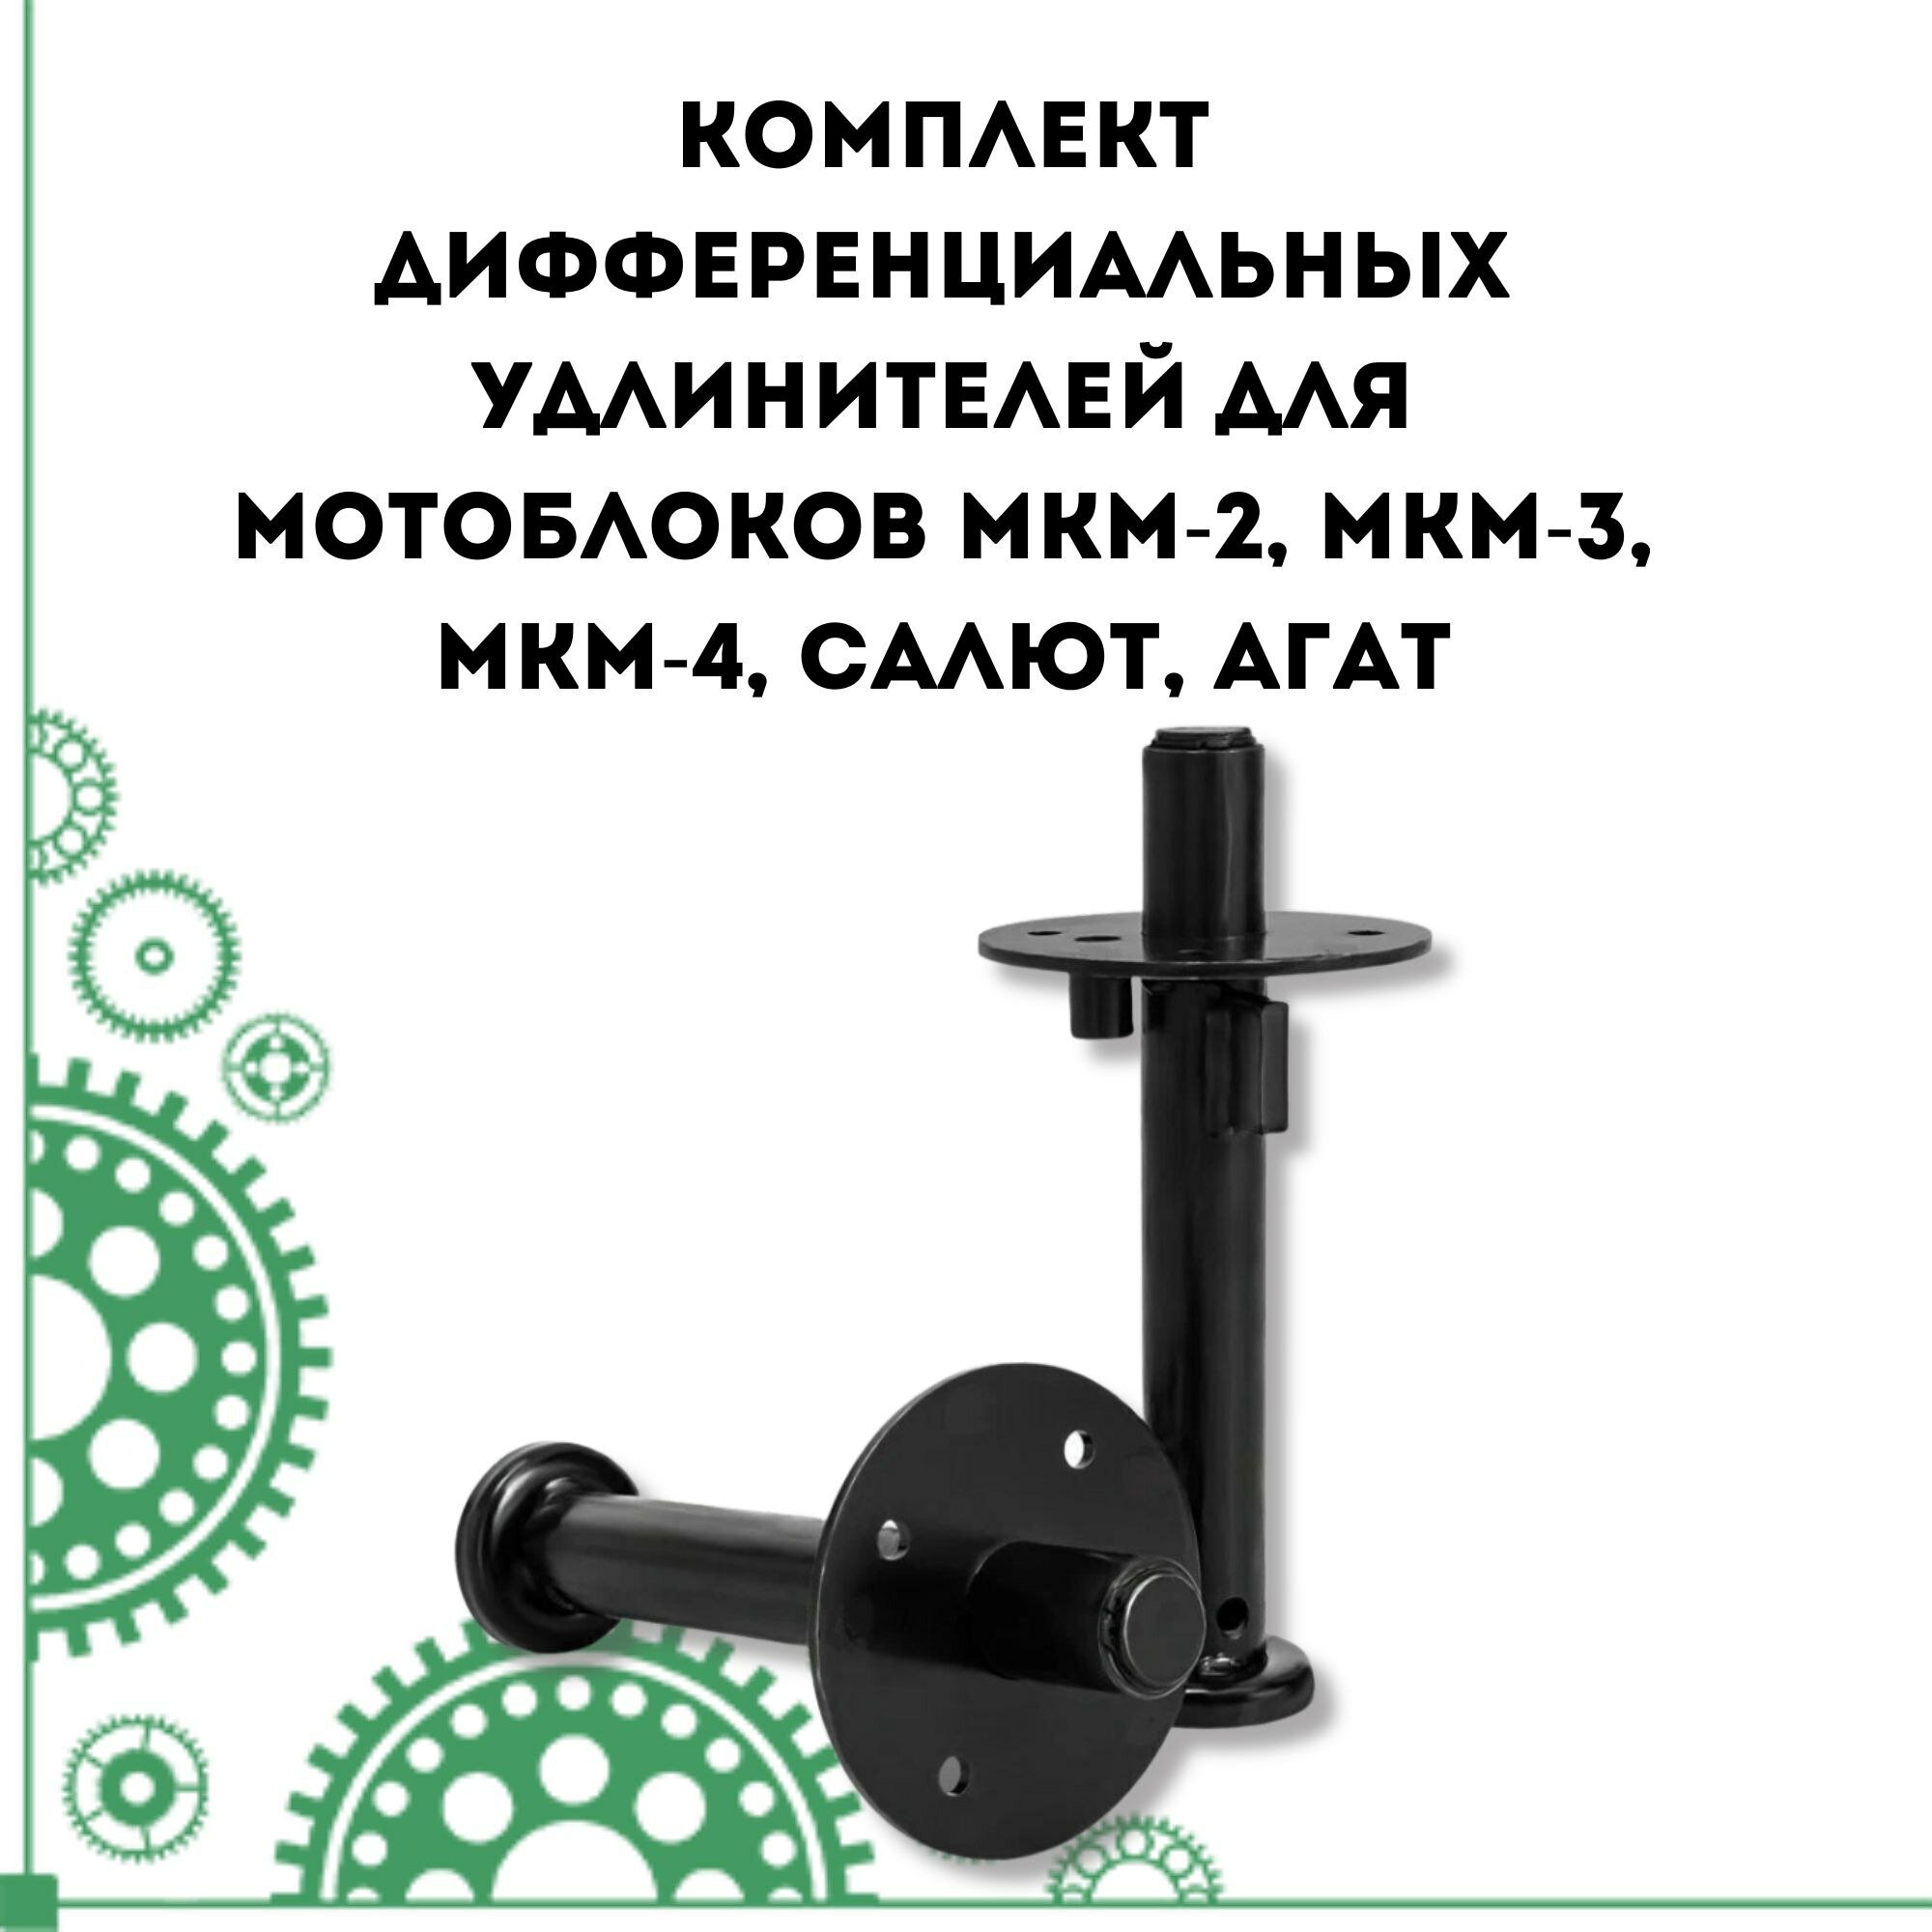 Комплект дифференциальных удлинителей для мотоблоков МКМ-2 МКМ-3 МКМ-4 Салют Агат